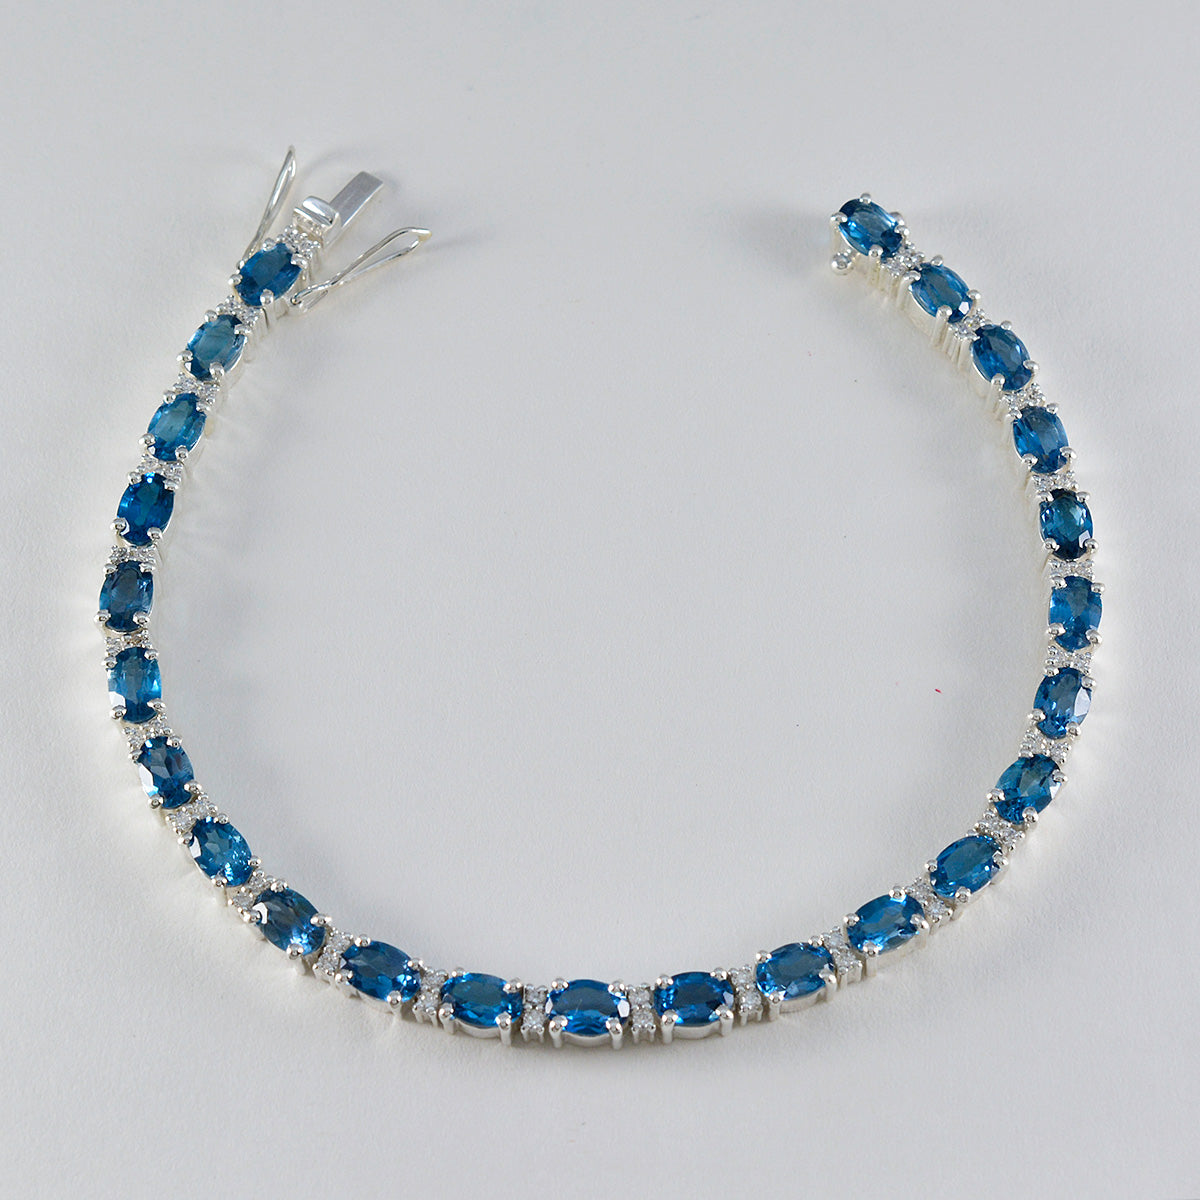 Riyo Attraktives 925er-Sterlingsilber-Armband für Damen, blaues Topas-Armband, Krappenfassung-Armband mit Box, mit Zungen-Tennis-Armband, Größe L, 15,2–21,6 cm.